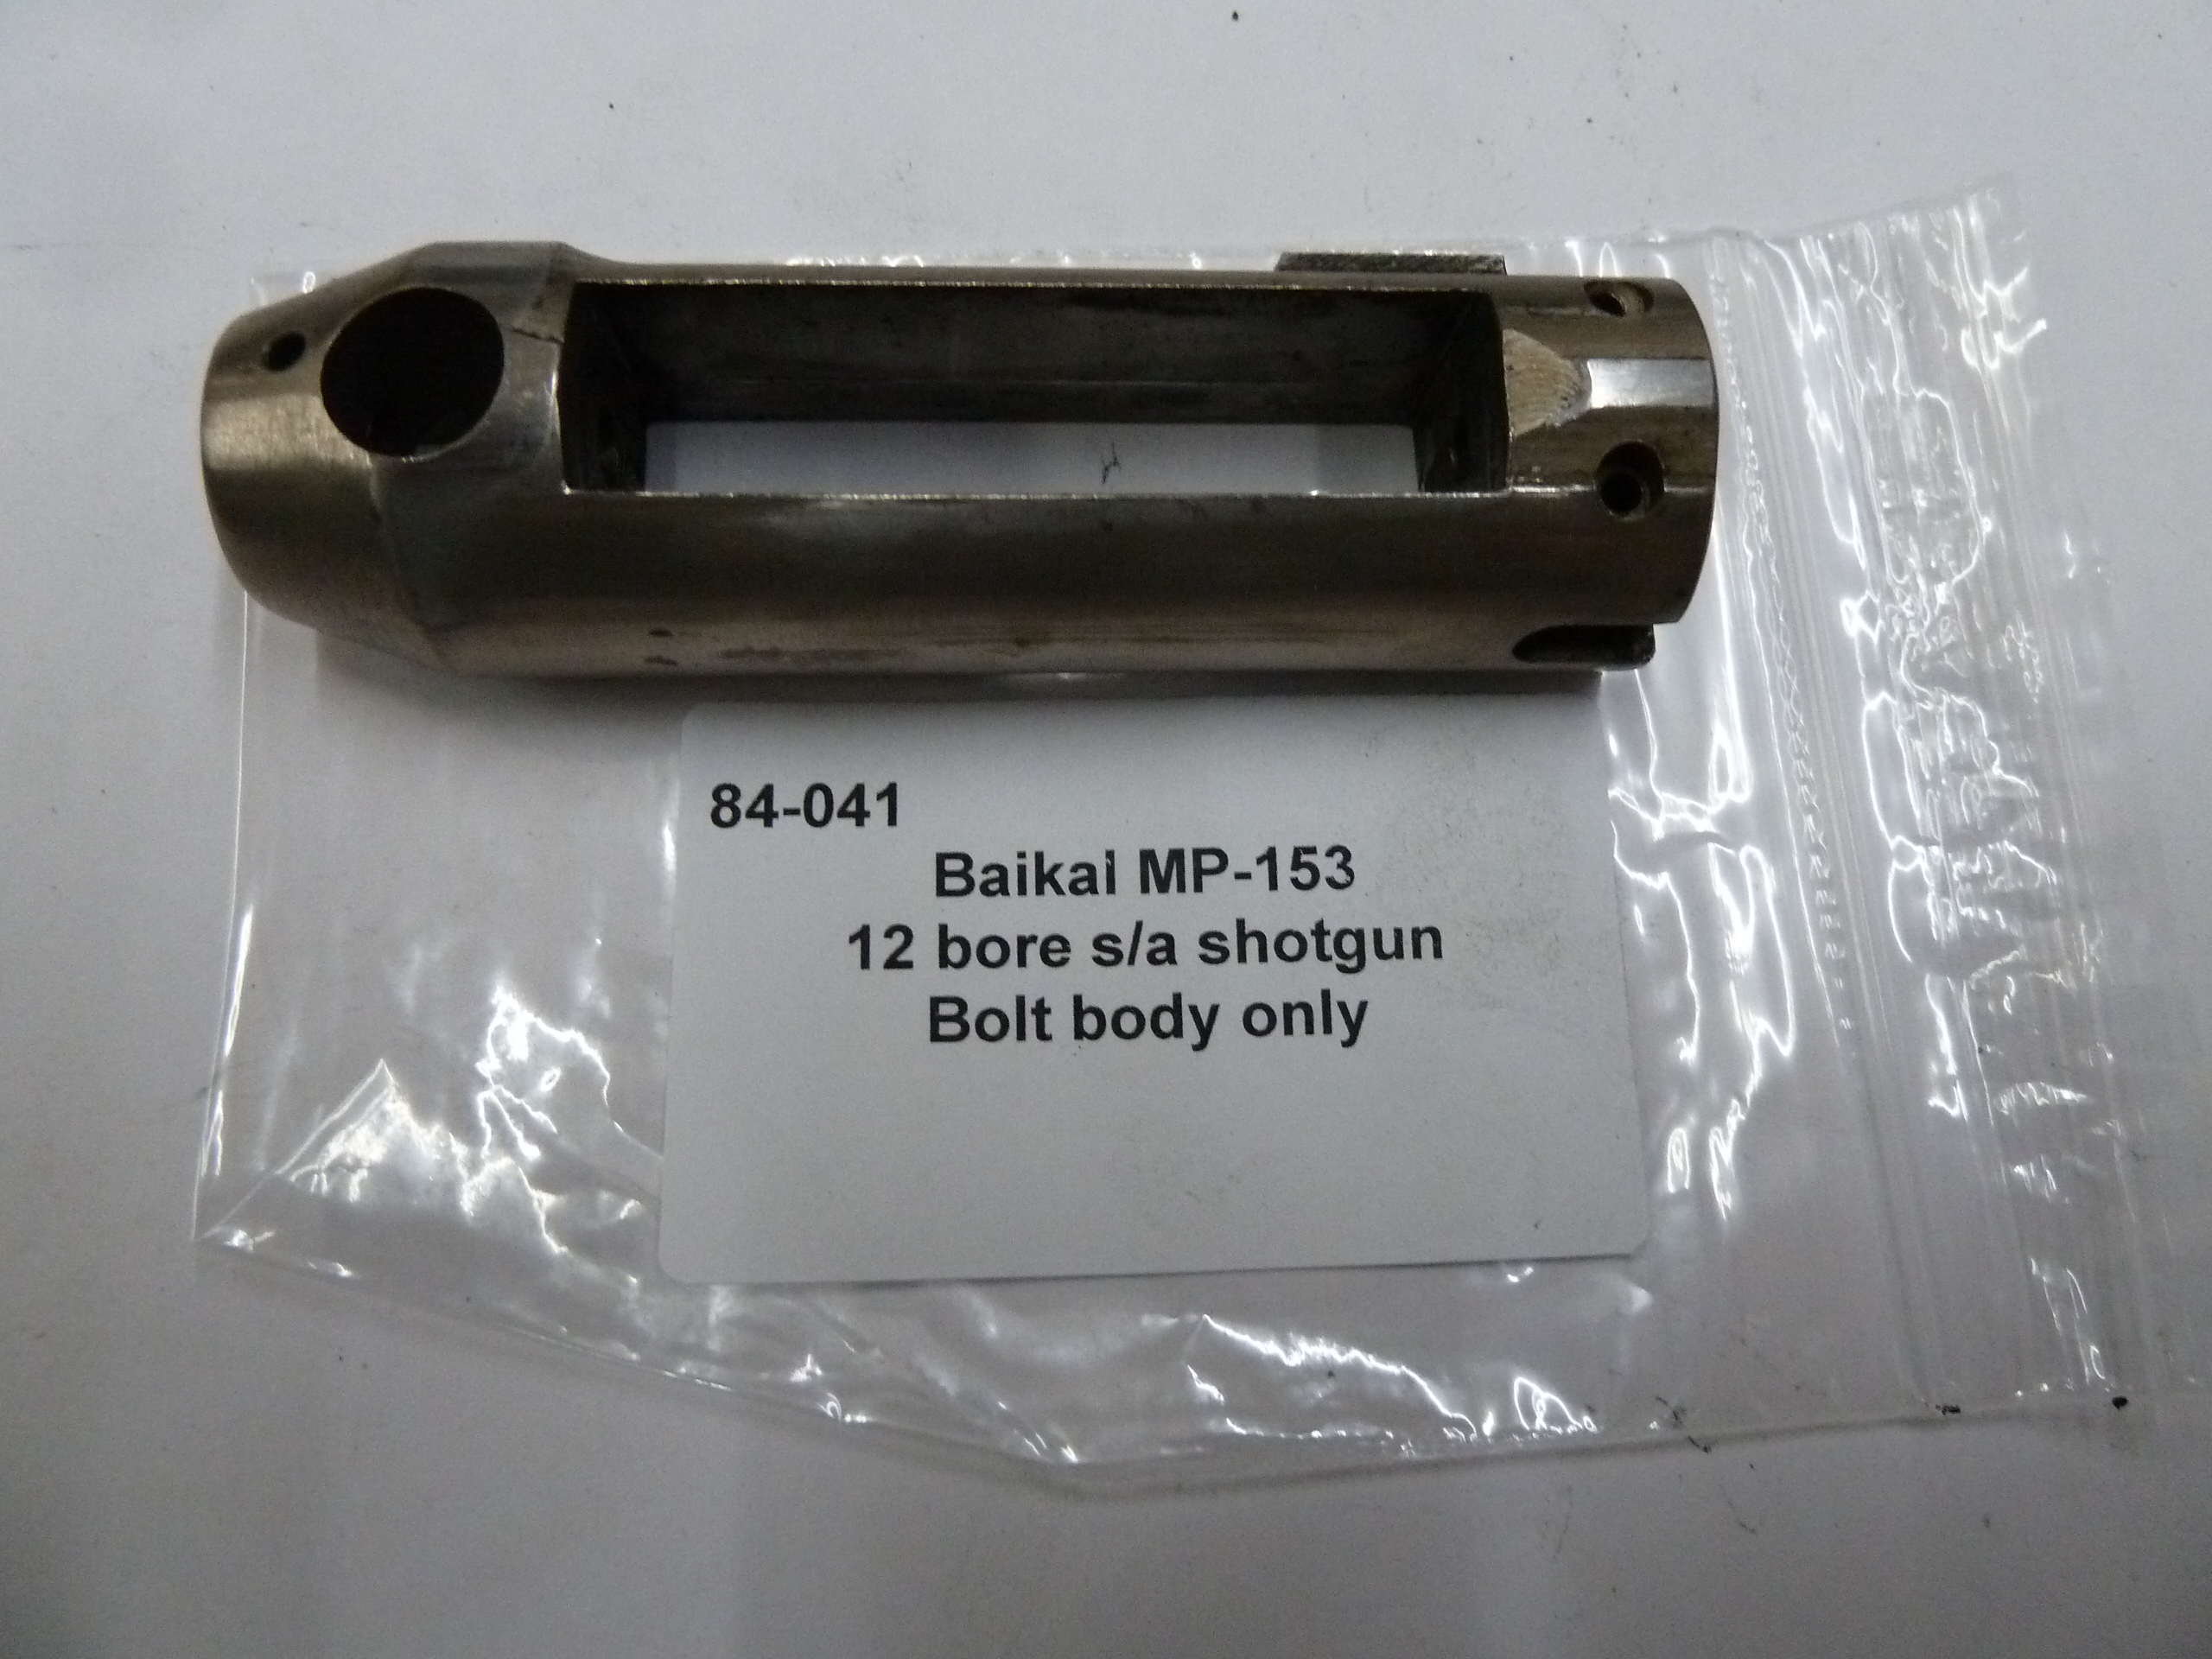 Baikal MP-153 bolt body only